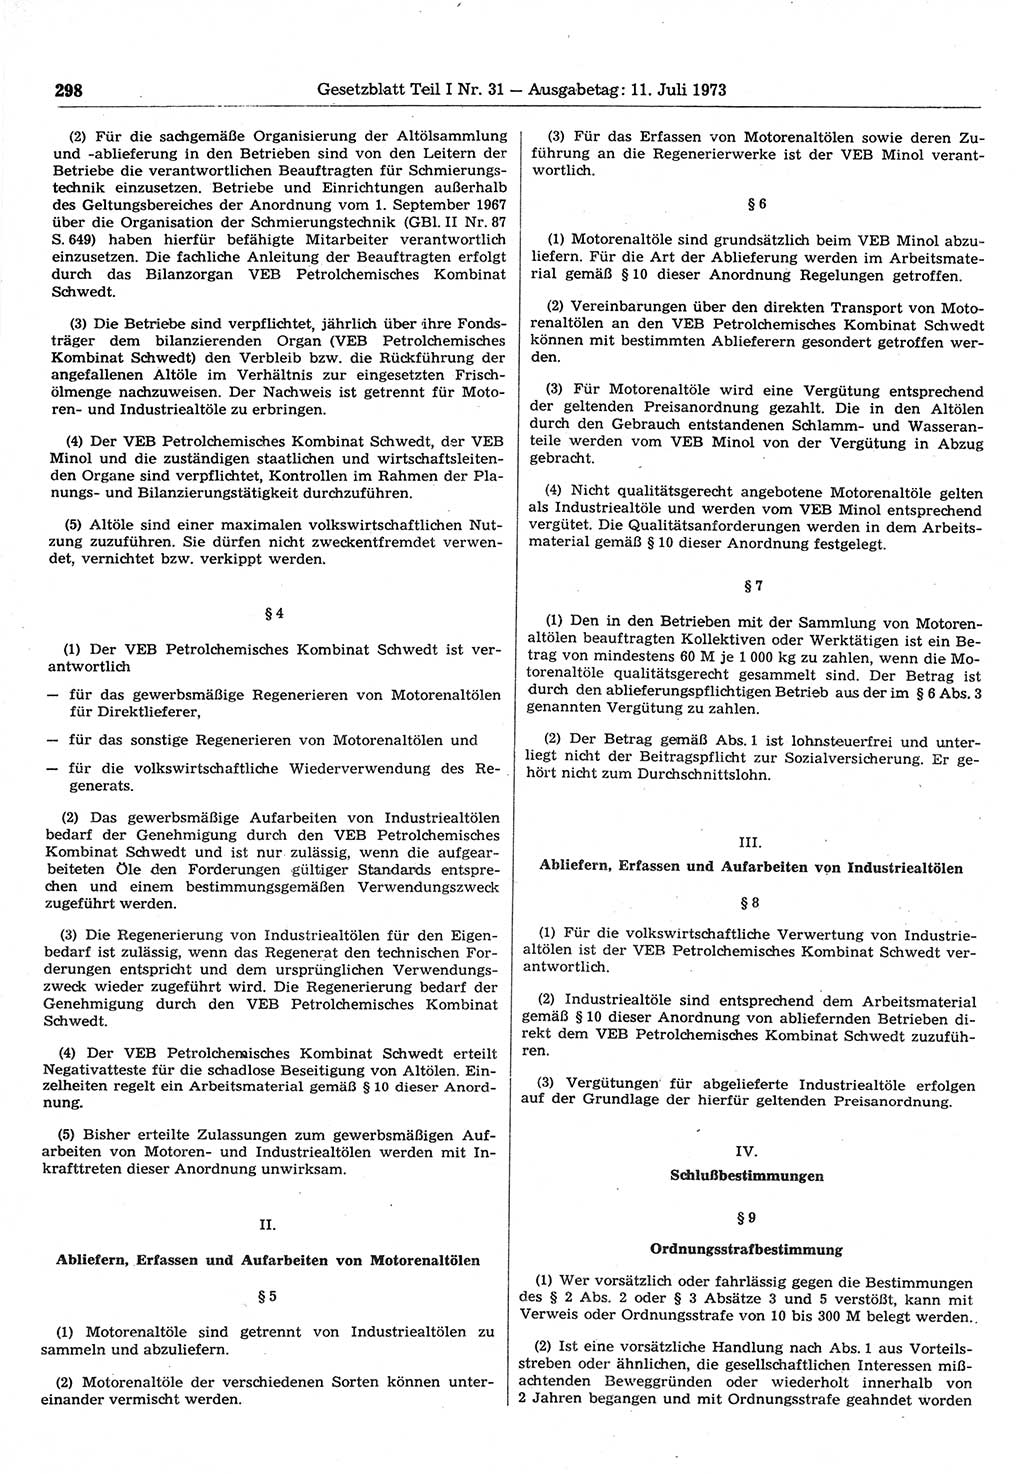 Gesetzblatt (GBl.) der Deutschen Demokratischen Republik (DDR) Teil Ⅰ 1973, Seite 298 (GBl. DDR Ⅰ 1973, S. 298)